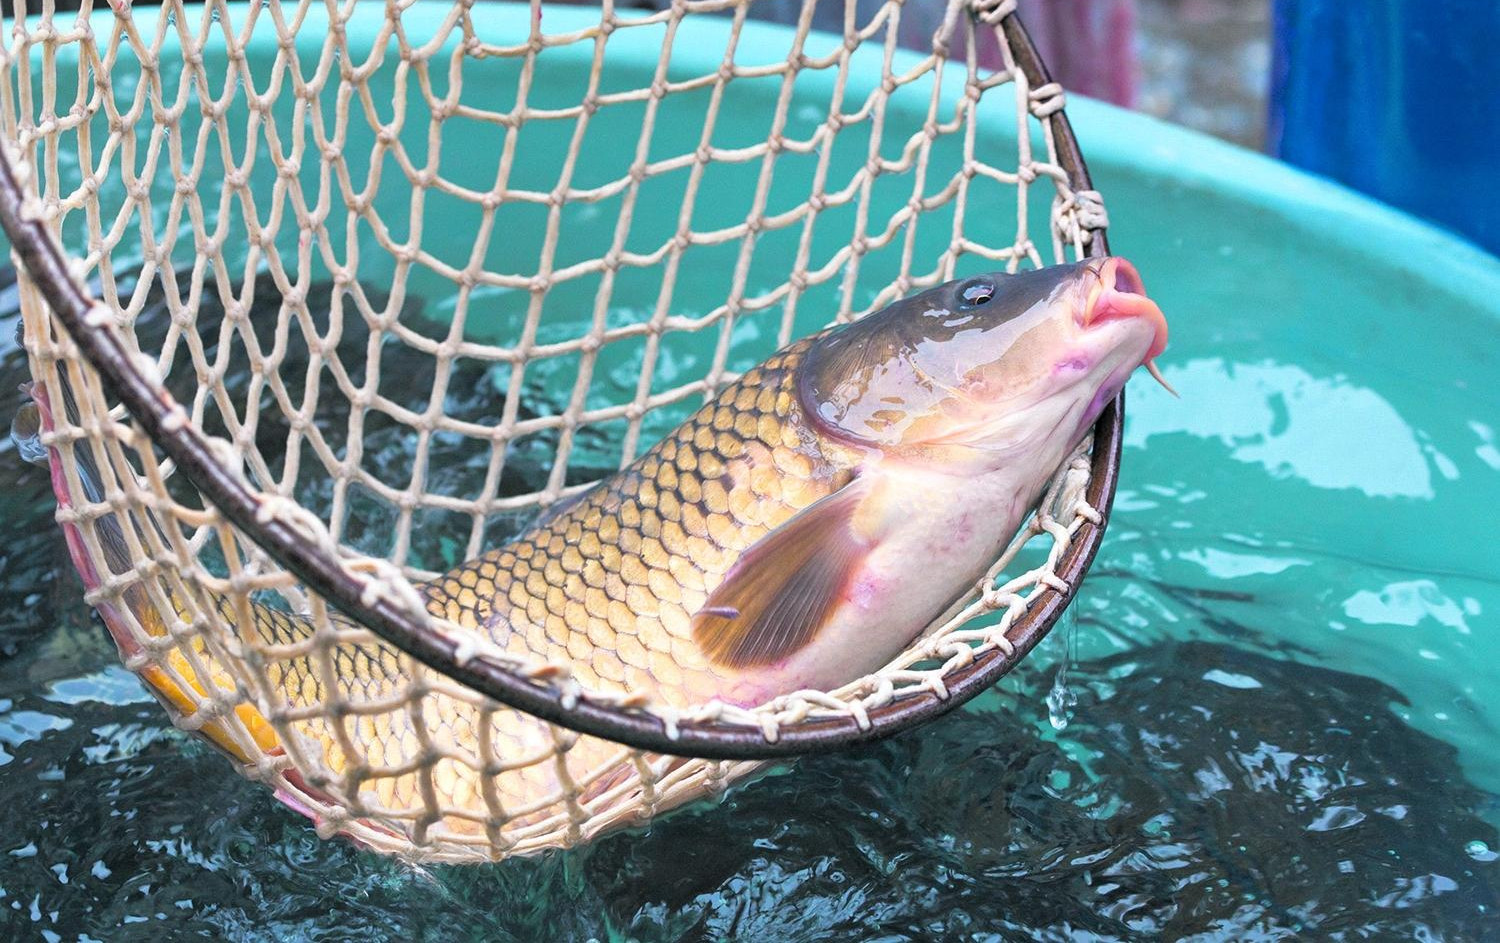 UVALJUJU NAM POKVARENOG ŠARANA ZBOG NESTAŠICE! Budite oprezni prilikom kupovine rečne ribe!